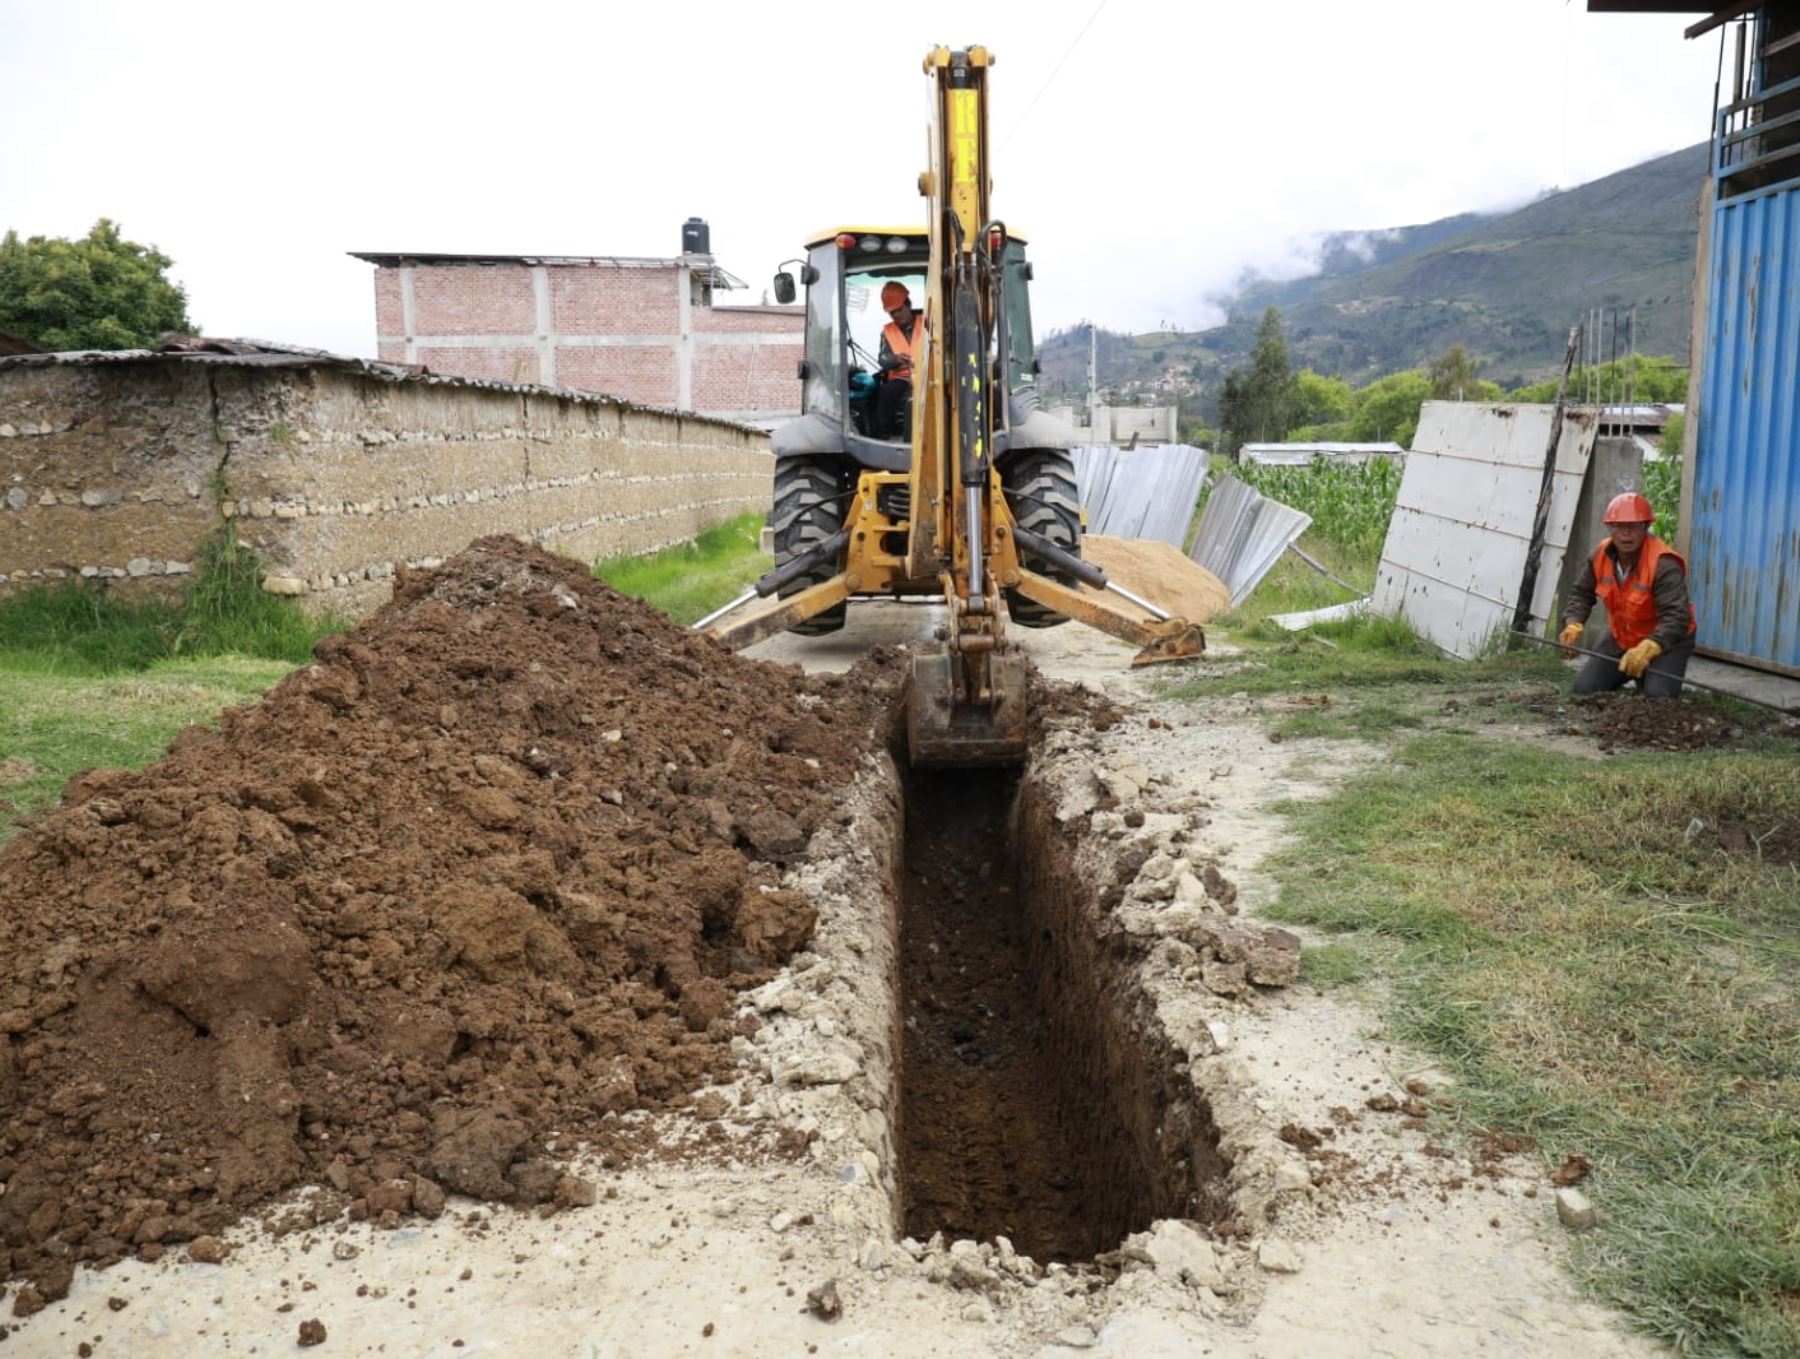 Más de 300 pobladores de la comunidad nativa de Moyobambillo, en el distrito de Balsapuerto, región Loreto, se beneficiarán con la obra de agua potable y saneamiento que ejecutará el Ministerio de Vivienda a partir de marzo.